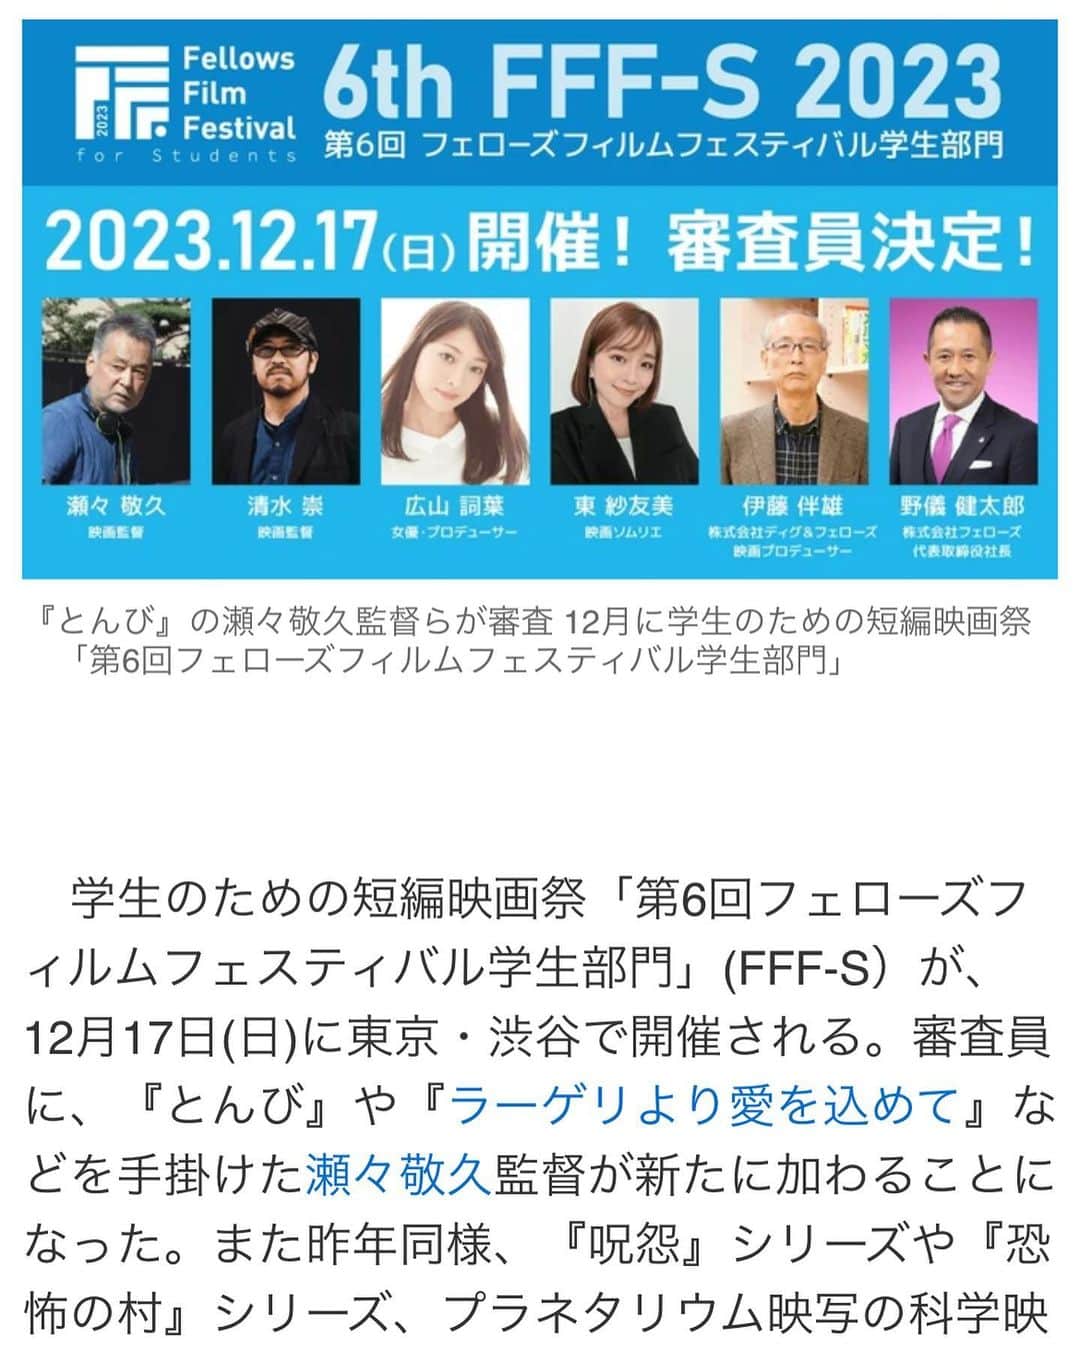 東紗友美のインスタグラム：「【審査員】学生のための短編映画祭「第6回フェローズフィルムフェスティバル学生部門」(FFF-S）が、12月17日(日)に東京・渋谷で開催されます。大変光栄なことに、私も今年も審査員をつとめさせていただきます。 今年は昨年から参加されている清水崇監督に加え、『とんび』や『ラーゲリより愛を込めて』や『春に散る』などを手掛けた瀬々敬久監督が新たに加わることになりました。  　ＦＦＦＳは、4分間のショートフィルムを募集するコンペティションで、一次審査を通過した8作品は都内の映画館で開催される授賞式で上映される。最優秀賞には賞金50万円が贈られ、BSフジ(BSデジタル放送)のテレビ番組で全国放送される。他にも優秀賞(2作品)には賞金10万円、観客賞に賞金10万円が贈られる。昨年に引き続き、協賛パートナーのソニー・ミュージックエンタテインメントの社名を冠した「ソニーミュージック賞」も設定。賞金10万円に、副賞としてソニーミュージック若手アーティストMV監督権 20万円が贈られる。作品の募集期間は9月30日(土)まで。 学生の方、ぜひチェックしてみてください✨  長年私も参加させていただいているのですが、受賞された方や応募された方をフェローズさんは手厚いサポートしてくださっていて。 人脈や、仲間作りの意味でも、たくさんのチャンスに恵まれる方が多いなと言う印象です。 昨年FFFSで話題になった短編ホラーは清水崇監督の応援コメントと共に、テレビで何度も話題になったりしました。 私もこの映画祭に参加すると、動いた分だけやはり人生はチャンスに恵まれものだなど、クリエイティブな世界を目指す人の数ははかりしれませんが、心でどれだけ熱量を抱えていても、それを行動に移さないとチャンスなんて来ないんですよね。  行動起こすことの大切さをこの映画祭で毎年感じています。  賞金や映画プロデューサーや監督からもらえるコメントだけでなく、この映画祭に実際に参加して、自分からどう動くかで未来を変える位の経験ができるかもしれません。 フェローズさんは映画祭に応募してきた学生を本当に大切にしてくれています。才能がある方だけでなく、業界に対してアグレッシブな人を、想いの強い人をたいせつにします。 長年それを見てきました。 ぜひ、熱い応募まってます。  映像業界を目指されている学生の方がもし私のSNSにいらしたら、ぜひチェックされてみてくださいね。  ・ご紹介 フェローズフィルムフェスティバル学生部門（FFF-S）とは？  株式会社フェローズが主催する学生のための「短編映画祭」です。 国内の学生を対象に4分間のショートフィルムを募集し、コンペティションを開催いたします。 一次審査を通過した8作品は都内の映画館で上映され、各賞を決定いたします。 最優秀作品は、ＢＳフジ（BSデジタル放送）のテレビ番組にて全国放送されます。 この映画祭が、学生クリエイターの皆さんにとって映像業界にチャレンジするキッカケとなり、 未来の映画監督や才能あふれるクリエイターの発掘、映像文化・クリエイティブ産業への貢献を目指しています。  株式会社フェローズ について  クリエイター（映像制作・Web・グラフィックデザイナー・ゲーム・アニメーター等）専門の人材マネジメント（人材派遣・紹介・業務委託・請負・セミナー・研修）ならびに、映画制作・映画祭運営など映画関連プロジェクト、Webマガジン「クリエイターズステーション」の運営を行っています。 現在、国内14拠点、海外2拠点（シンガポール・ハワイ）に展開中！  https://www.fellow-s.co.jp/  #フェローズフィルムフェスティバル  #フェローズフィルムフェスティバル学生部門  #映画　#映画好きな人と繋がりたい　#映画垢　#映画鑑賞　#試写会 #映画祭」